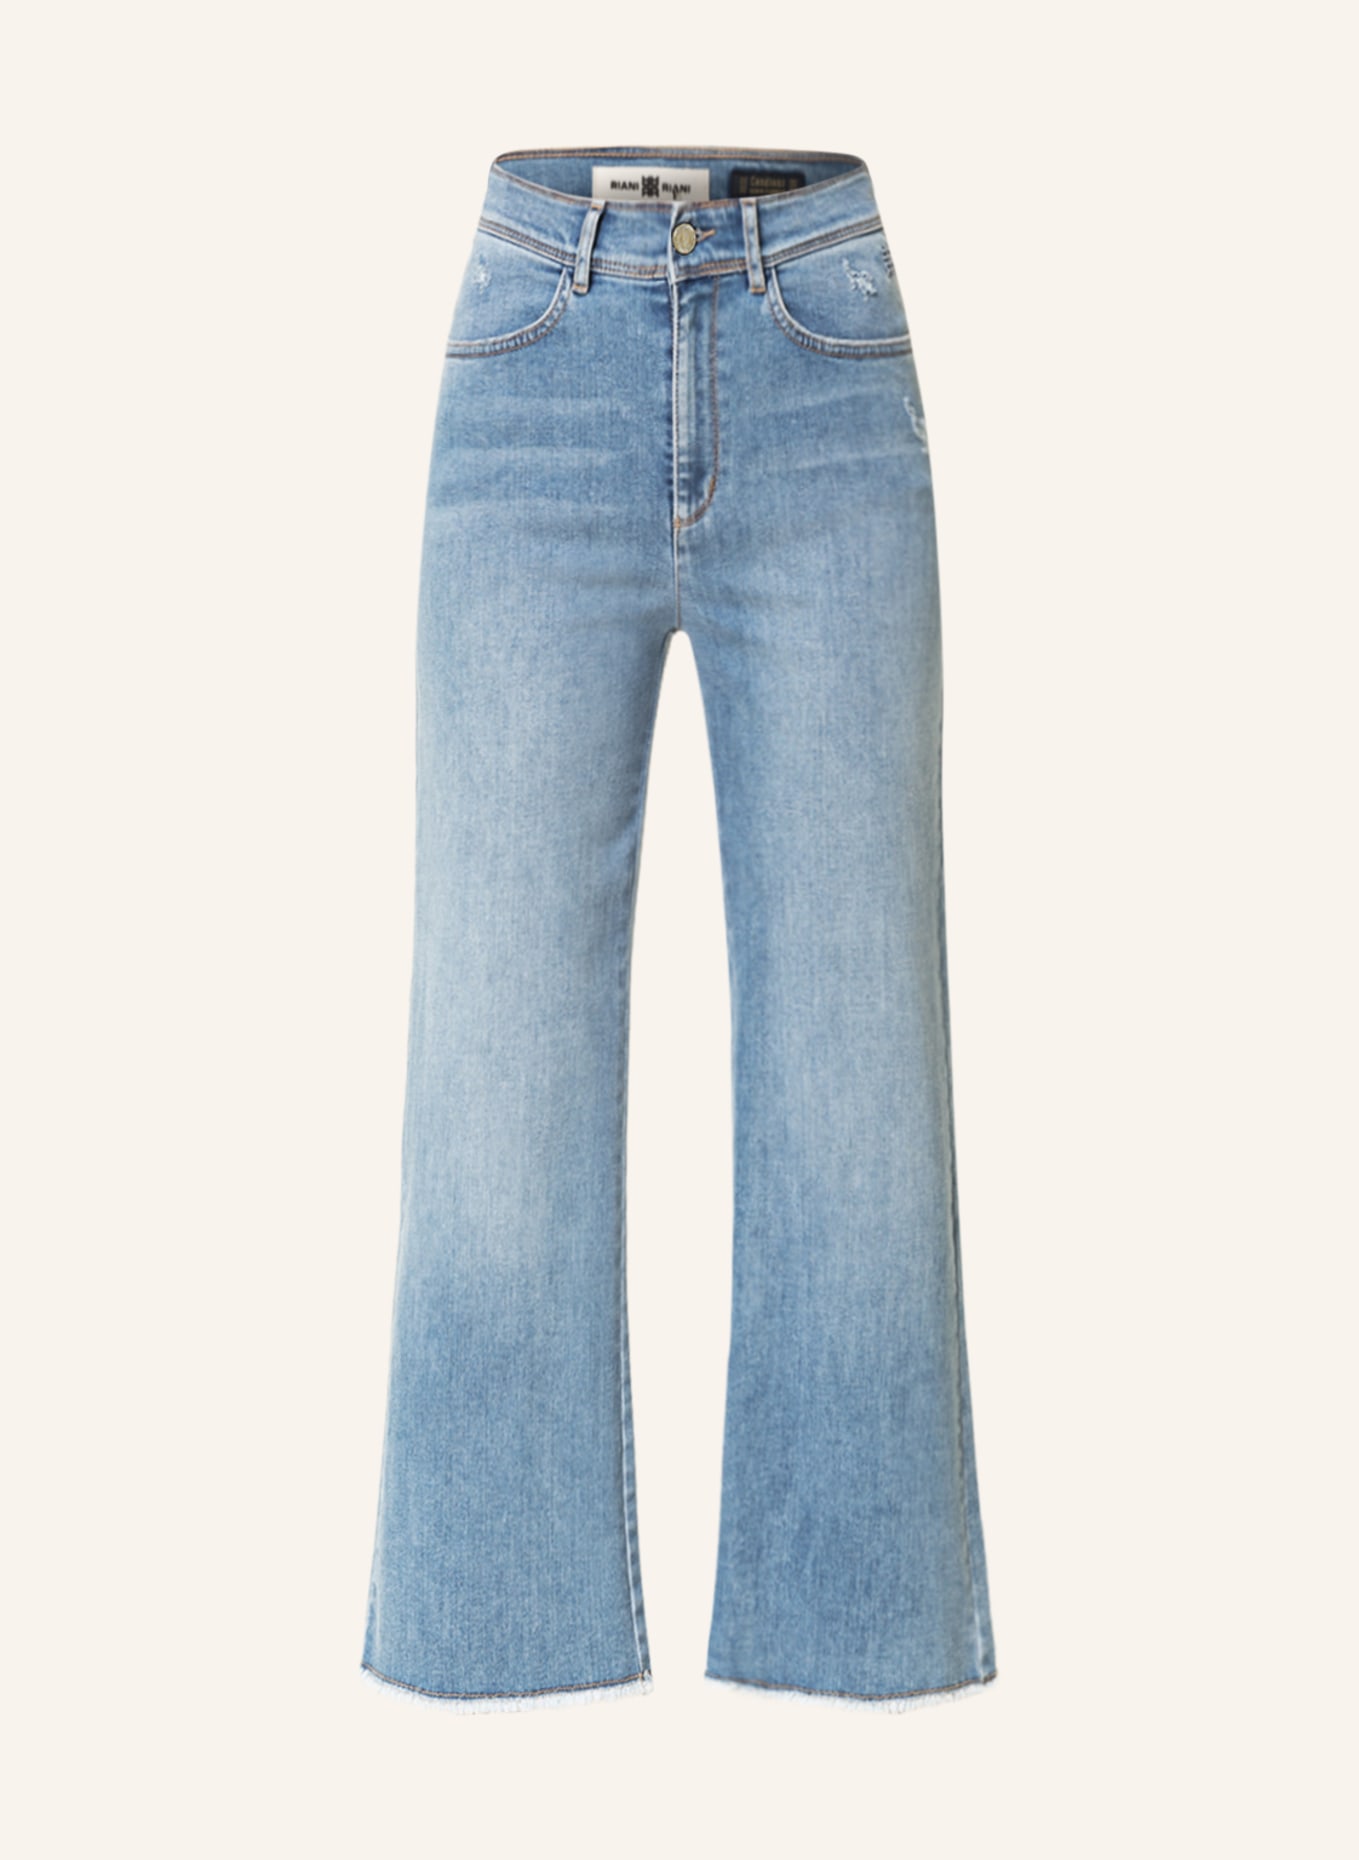 RIANI Jeans-Culotte, Farbe: 417 light blue scratched (Bild 1)